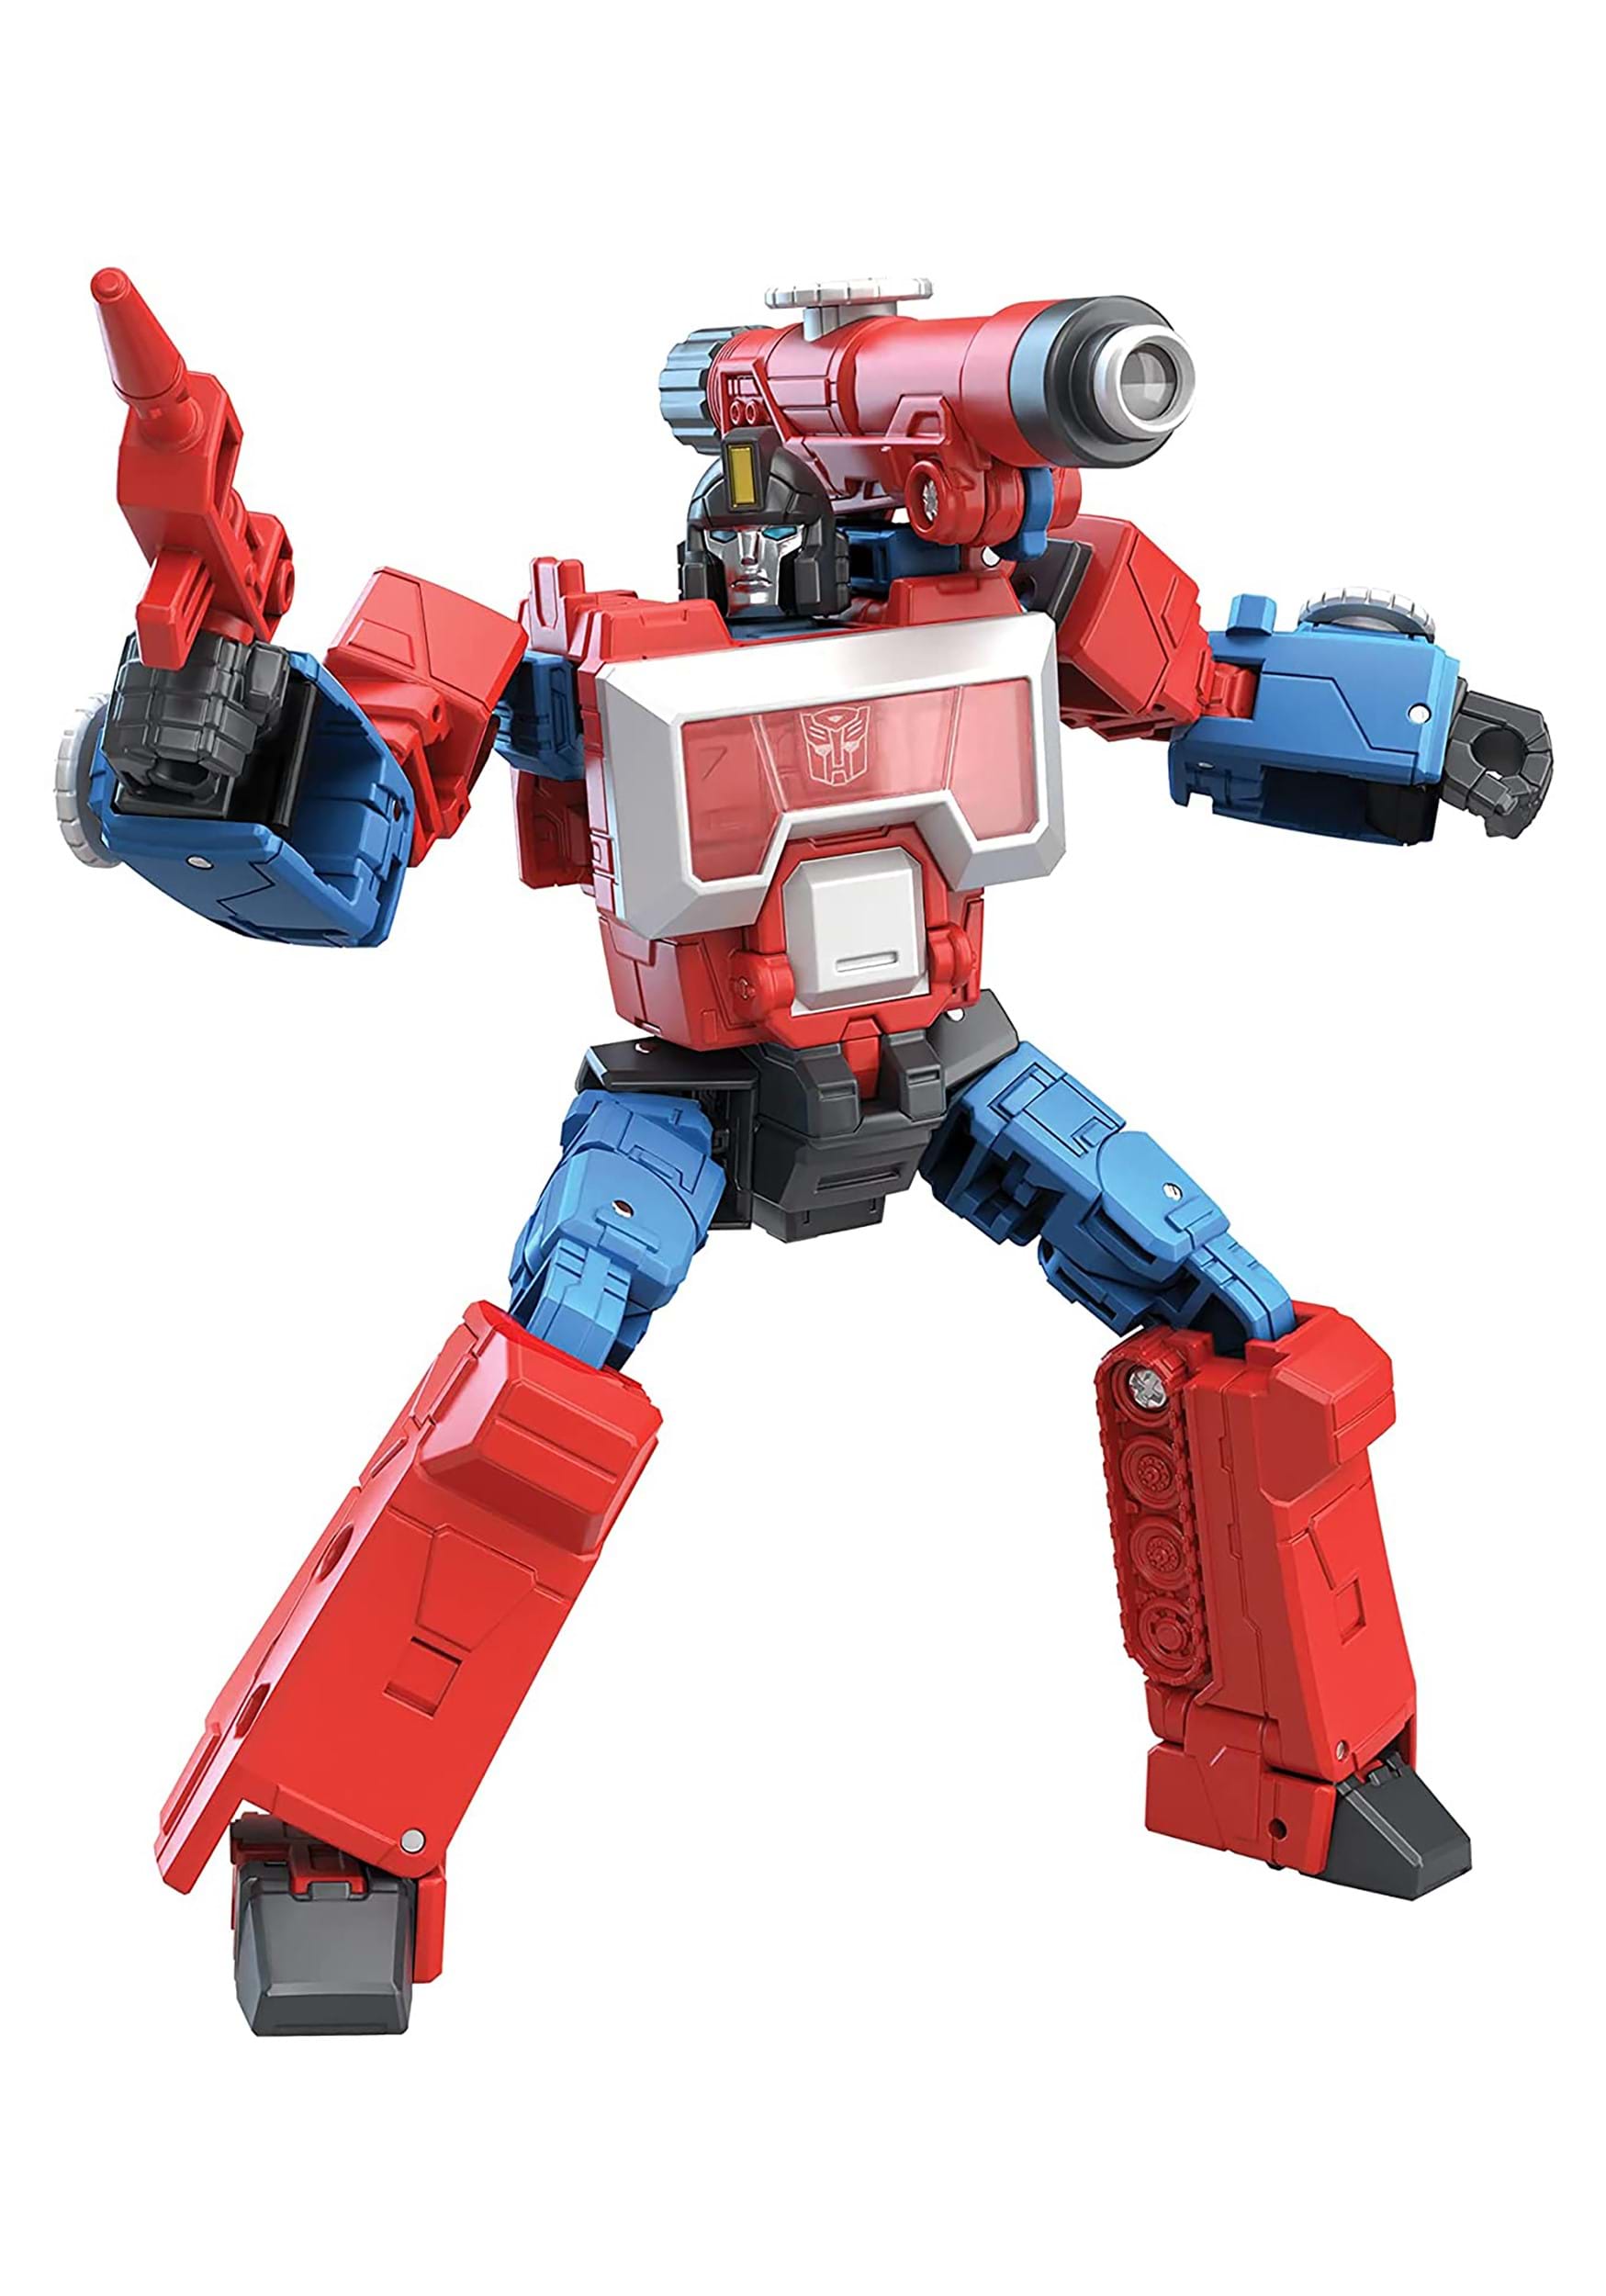 Studio Series 86 Transformers Deluxe Perceptor Action Figure